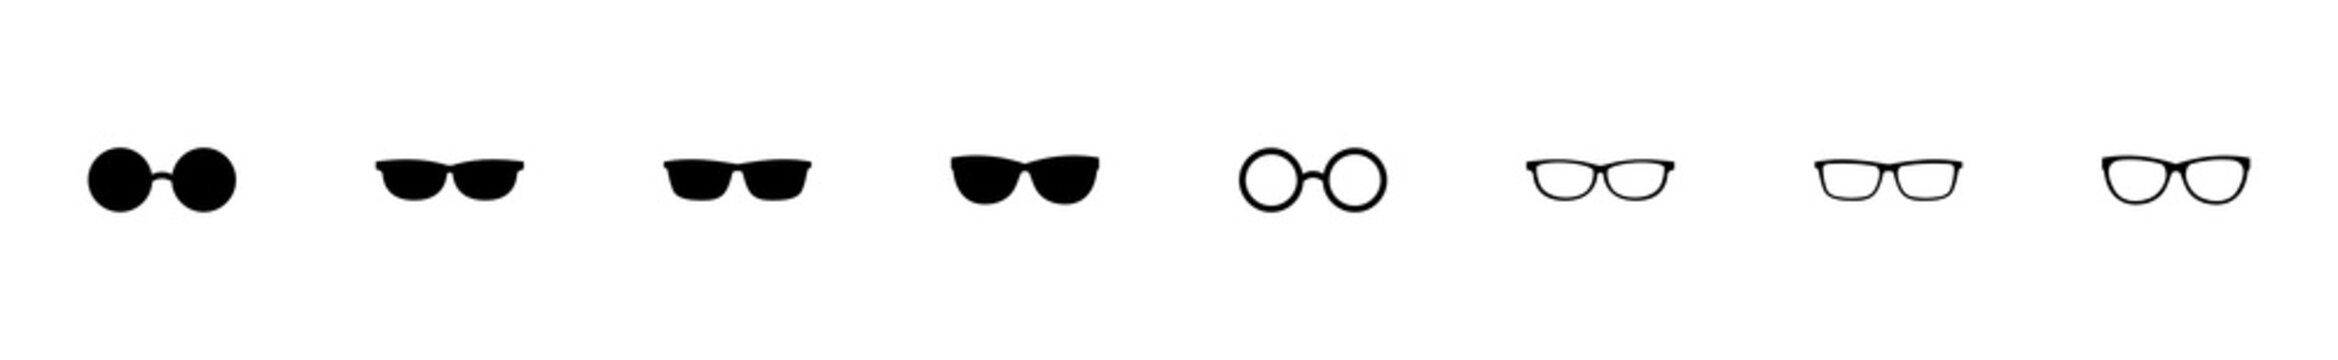 Glasses icon set. Glasses vector icon